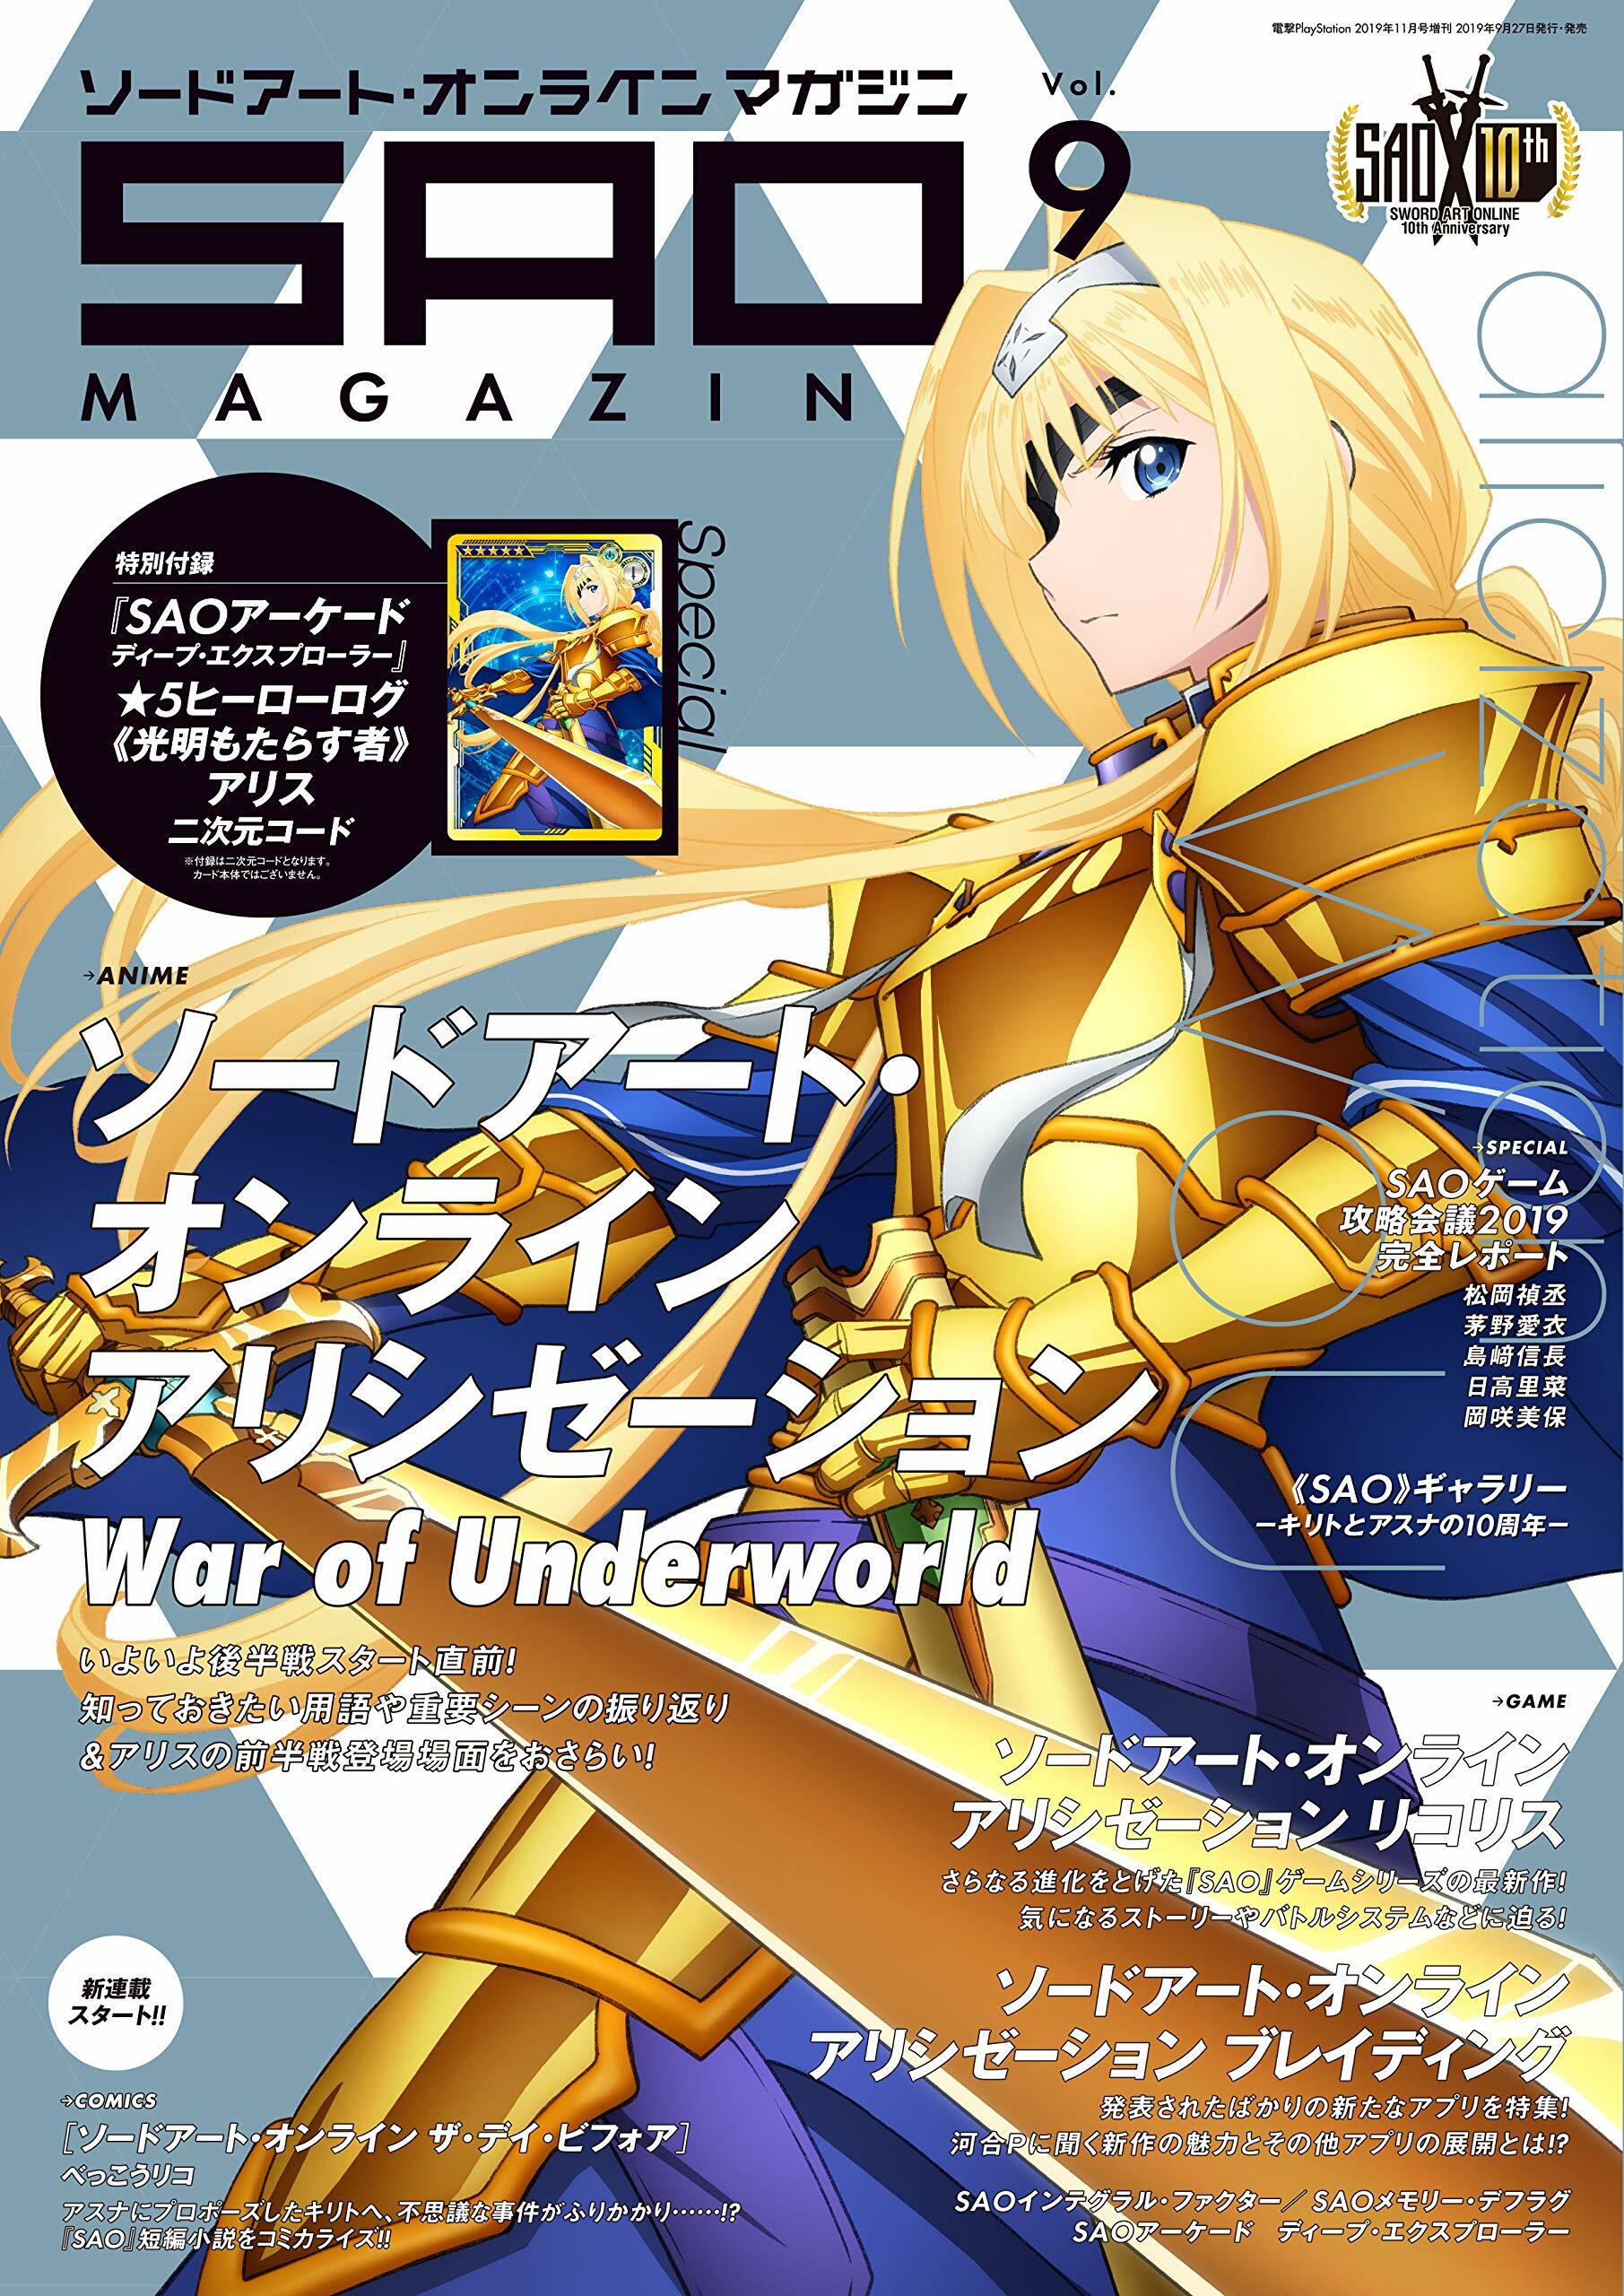 電擊PlayStation 2019年 11月號增刊 ソ-ドア-ト·オンライン マガジン Vol.9